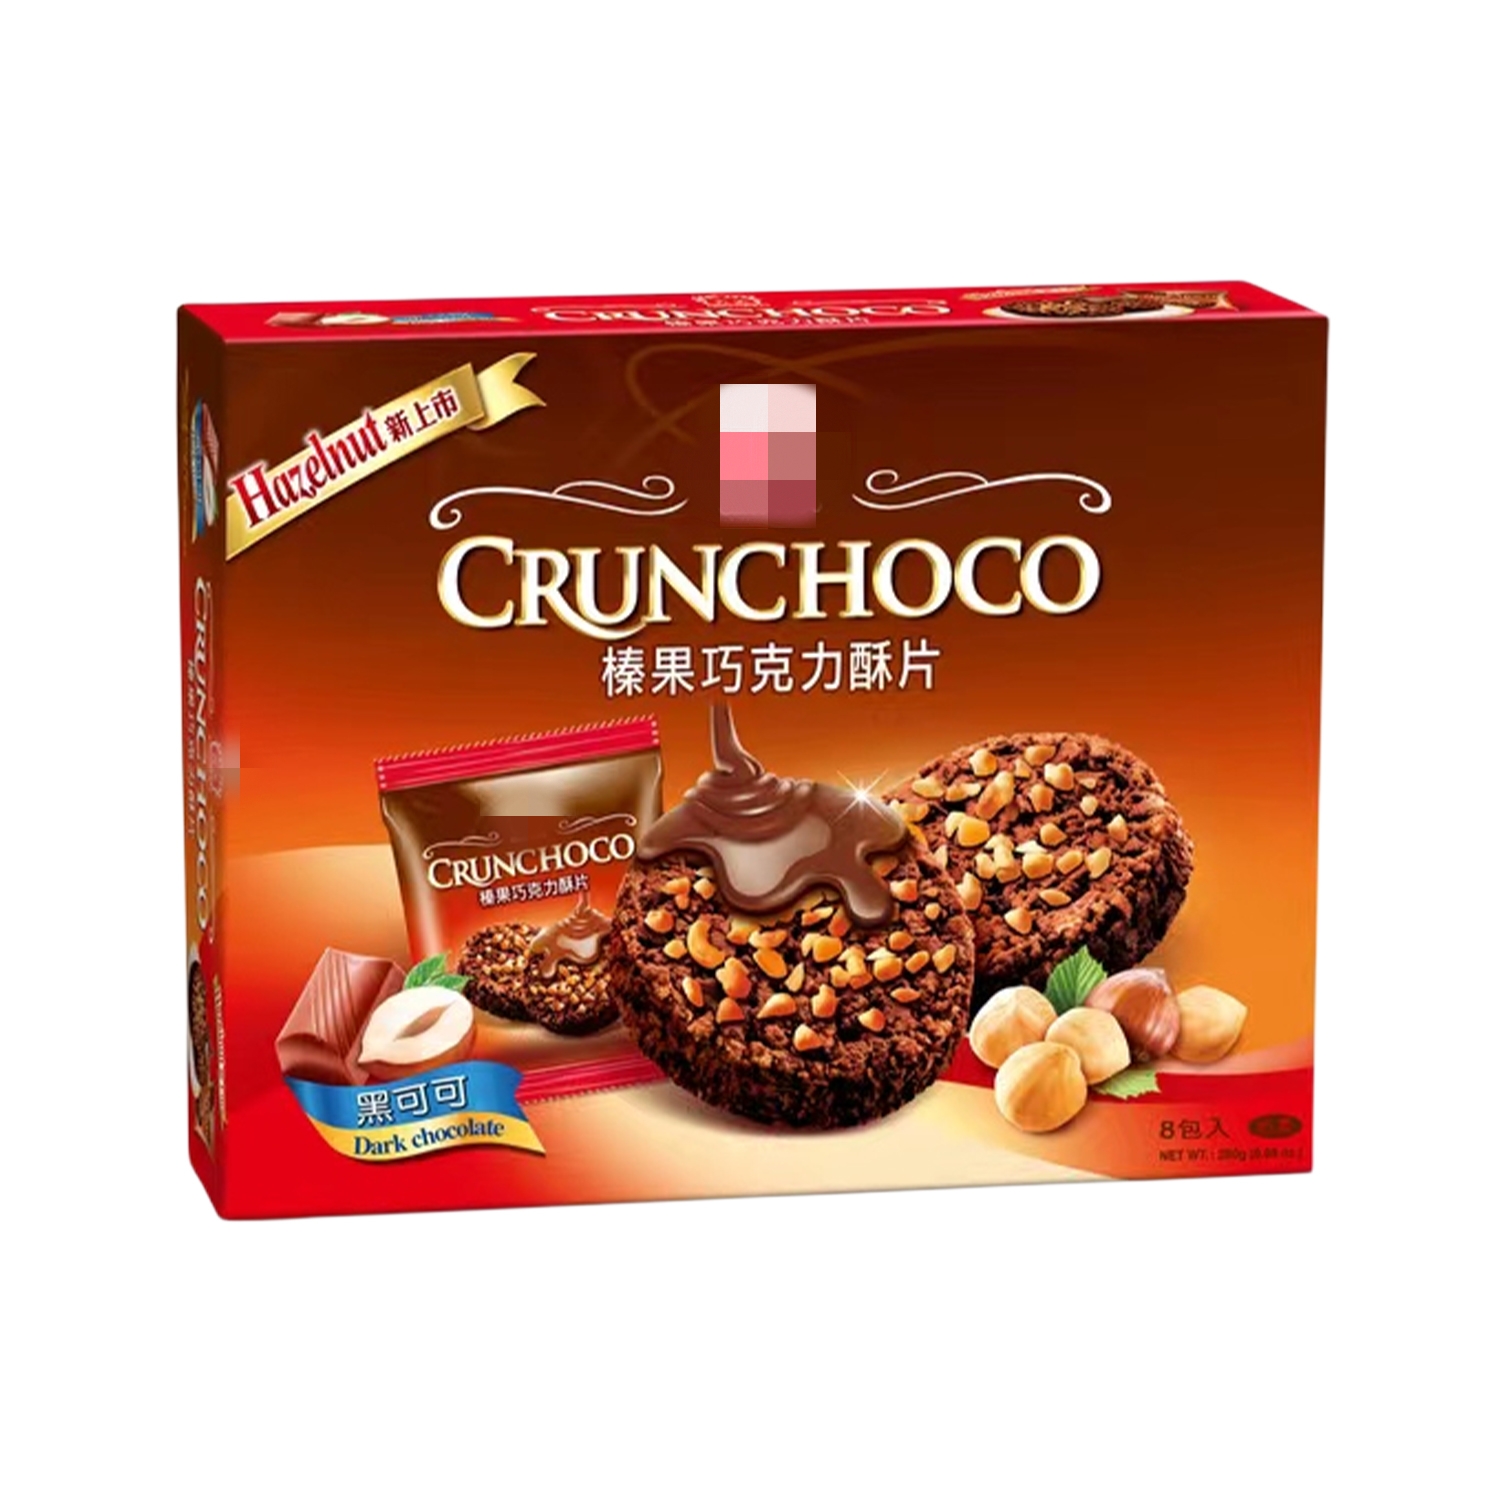 一盒包邮台湾原装进口杏仁巧克力酥片榛果黑可可酥片140g经典零食-图3